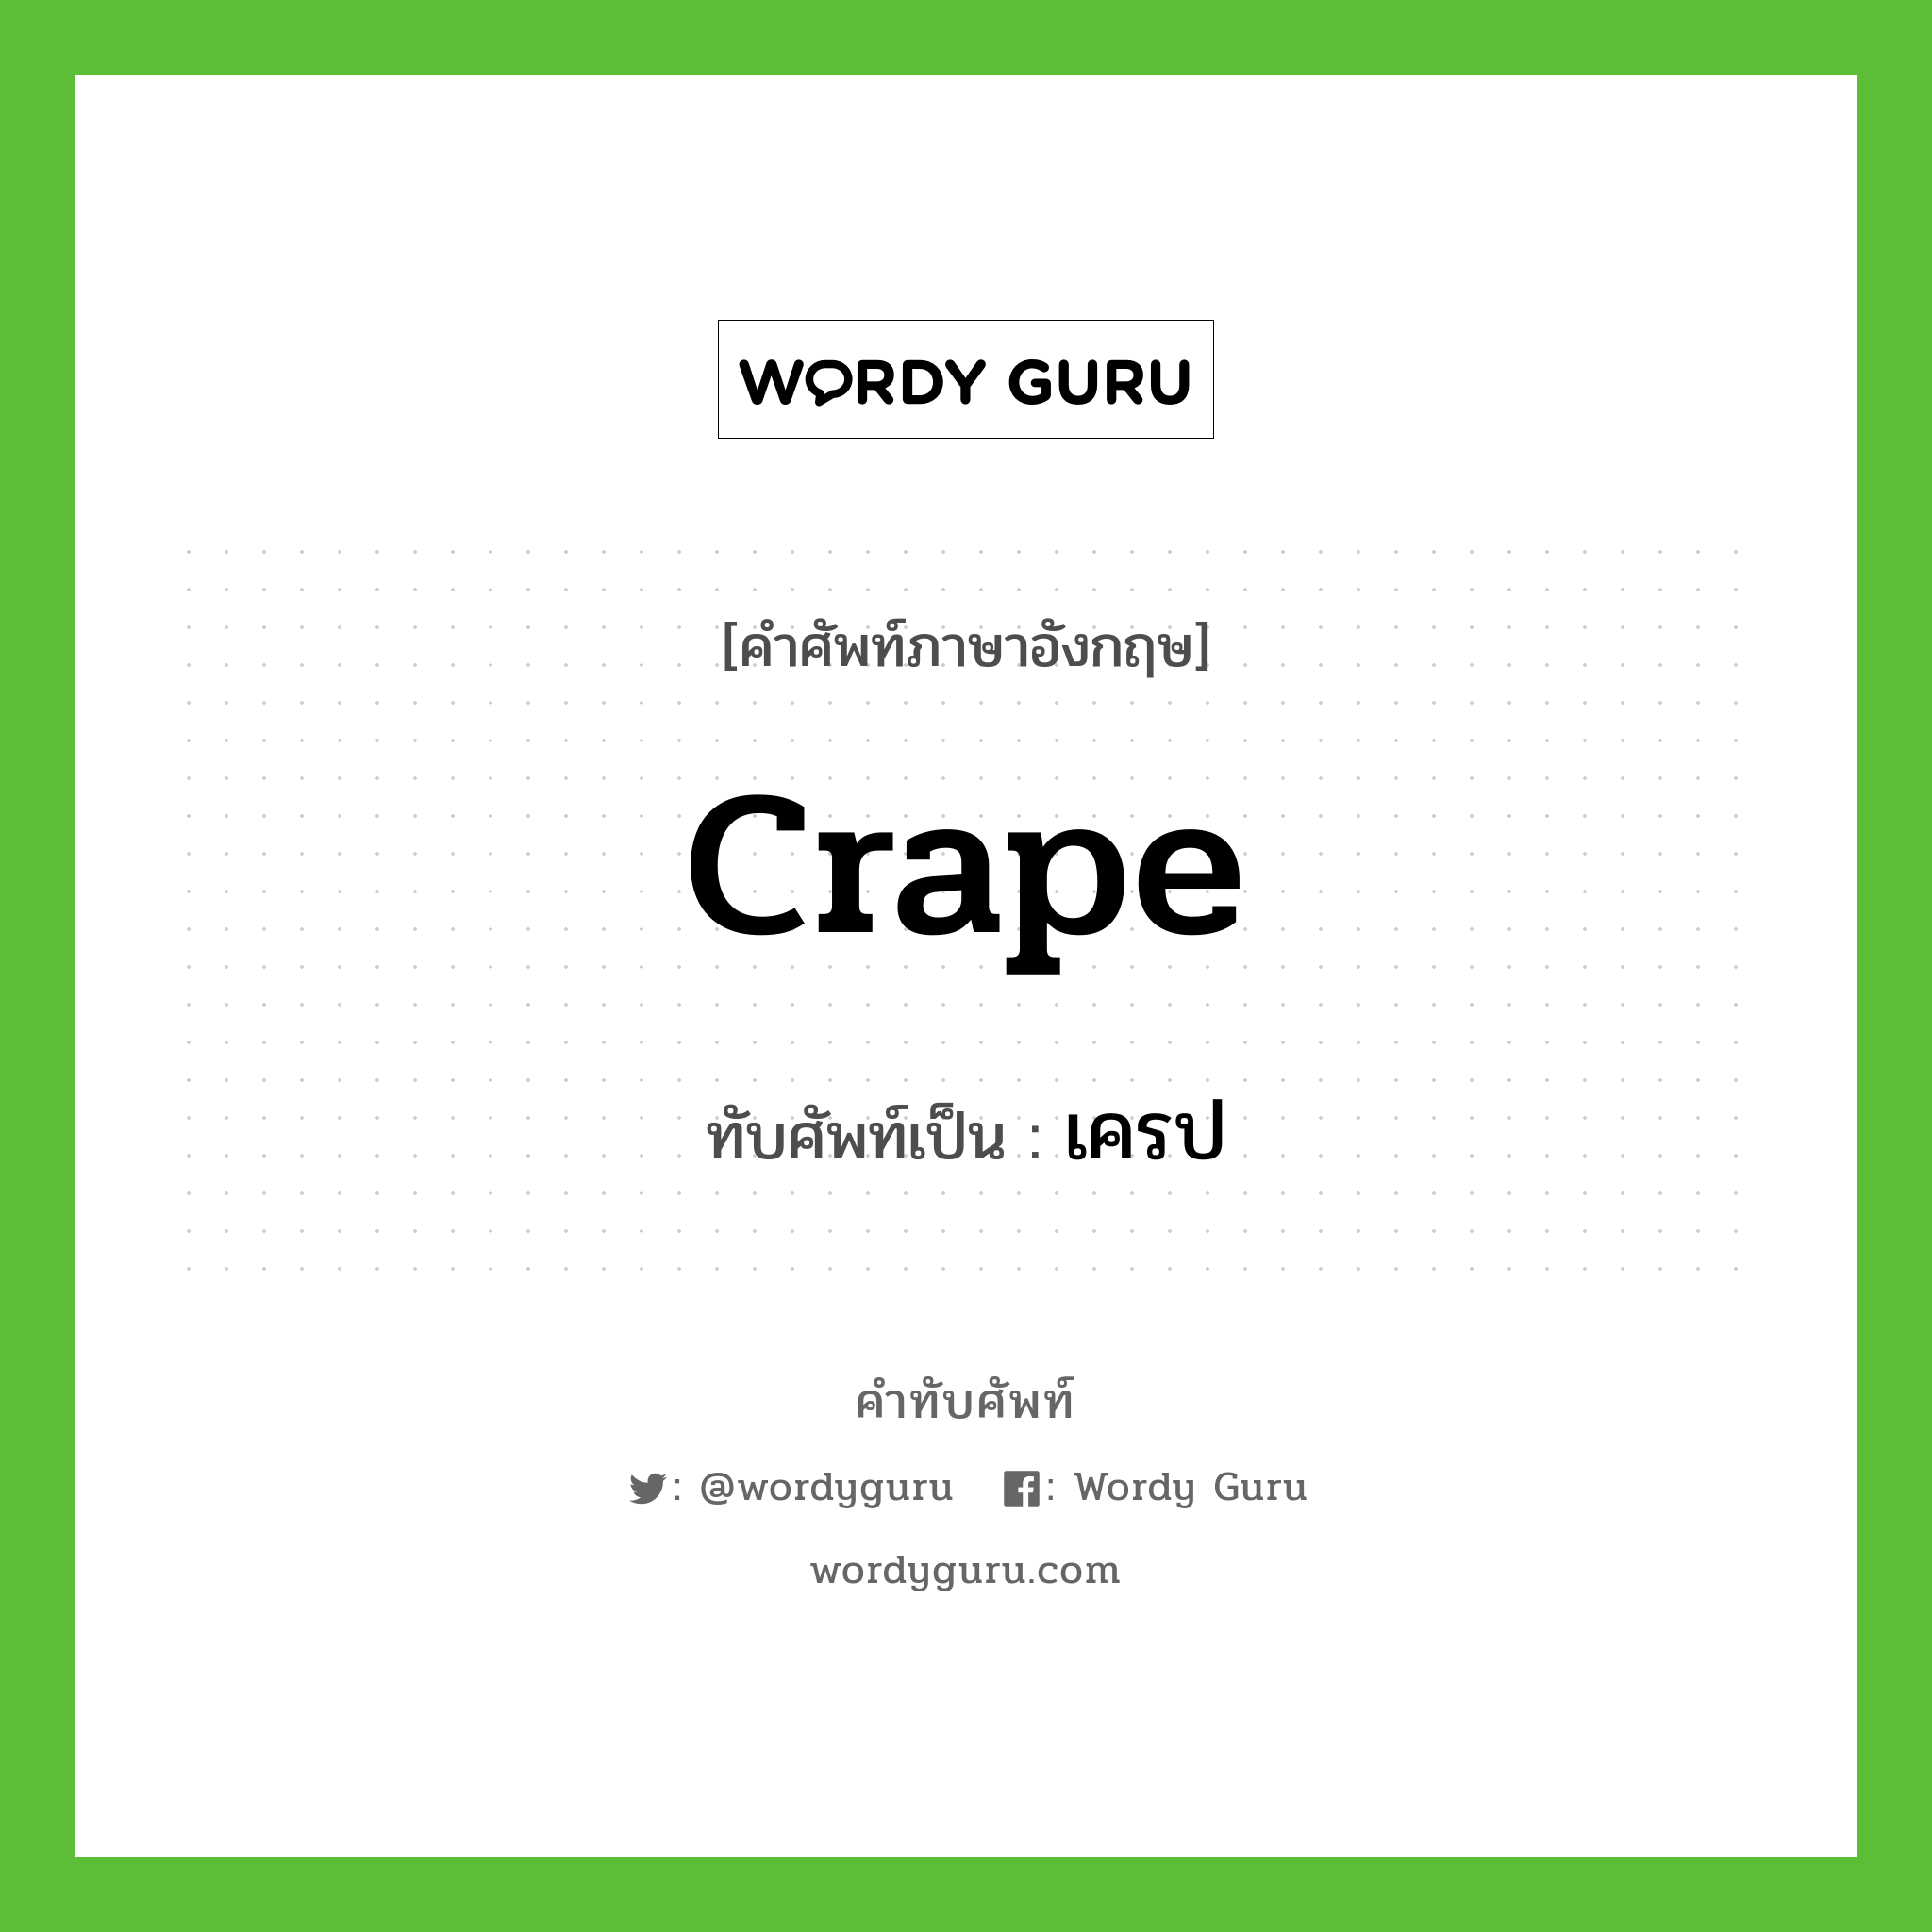 crape เขียนเป็นคำไทยว่าอะไร?, คำศัพท์ภาษาอังกฤษ crape ทับศัพท์เป็น เครป